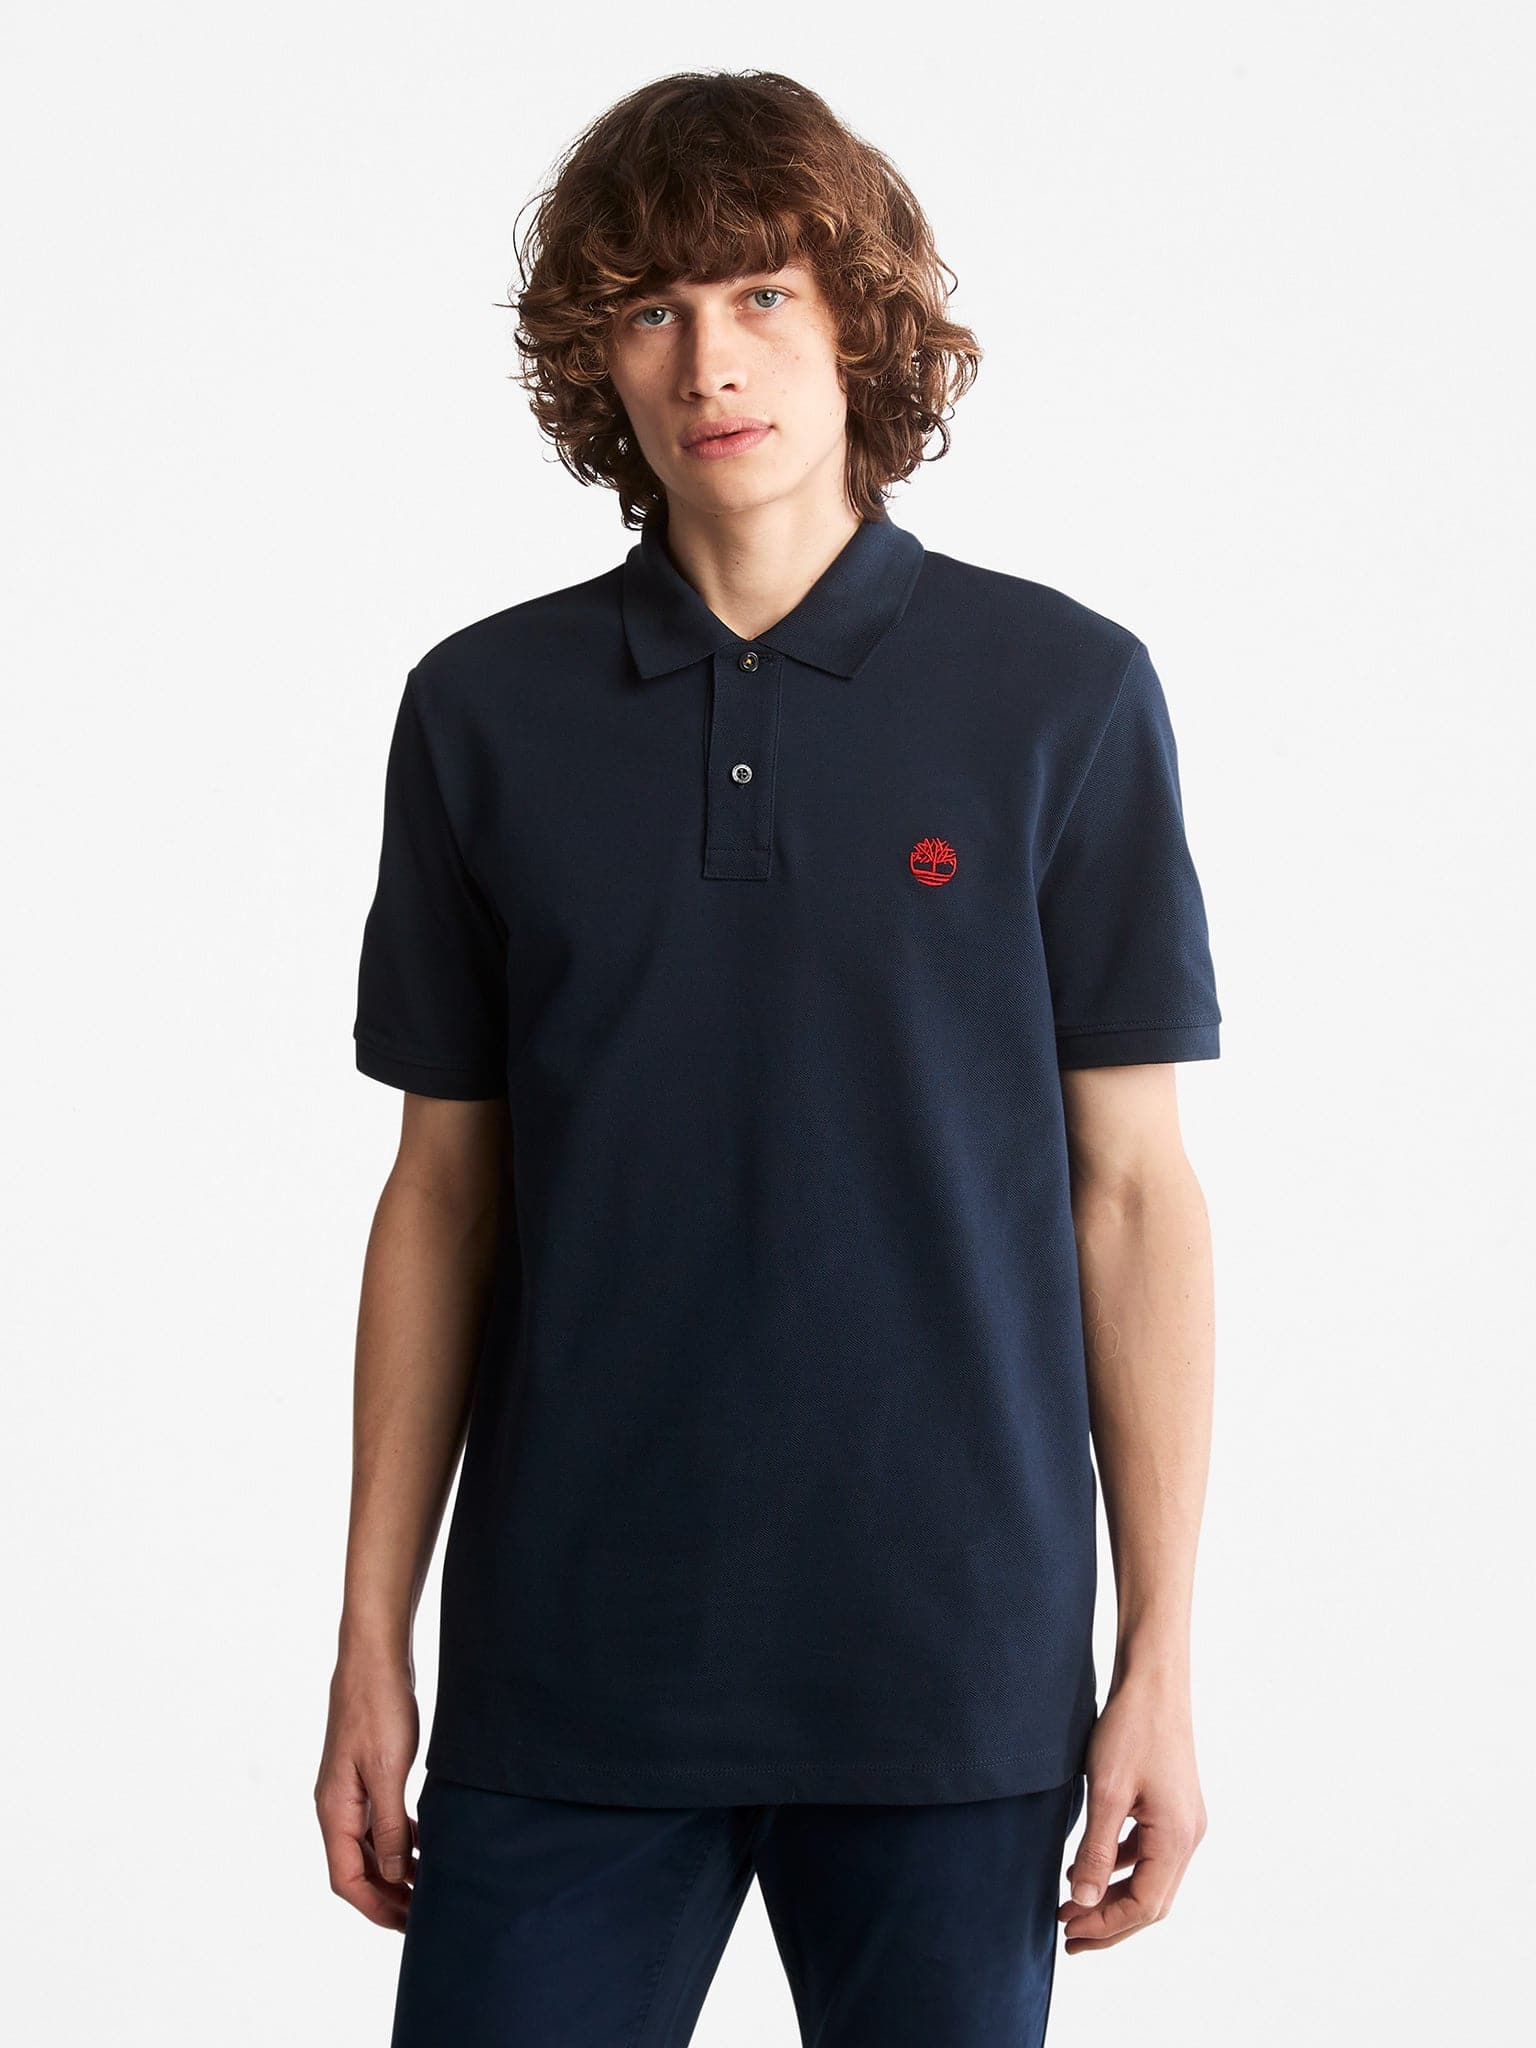 Ανδρική μπλούζα polo | TB0A26N4433